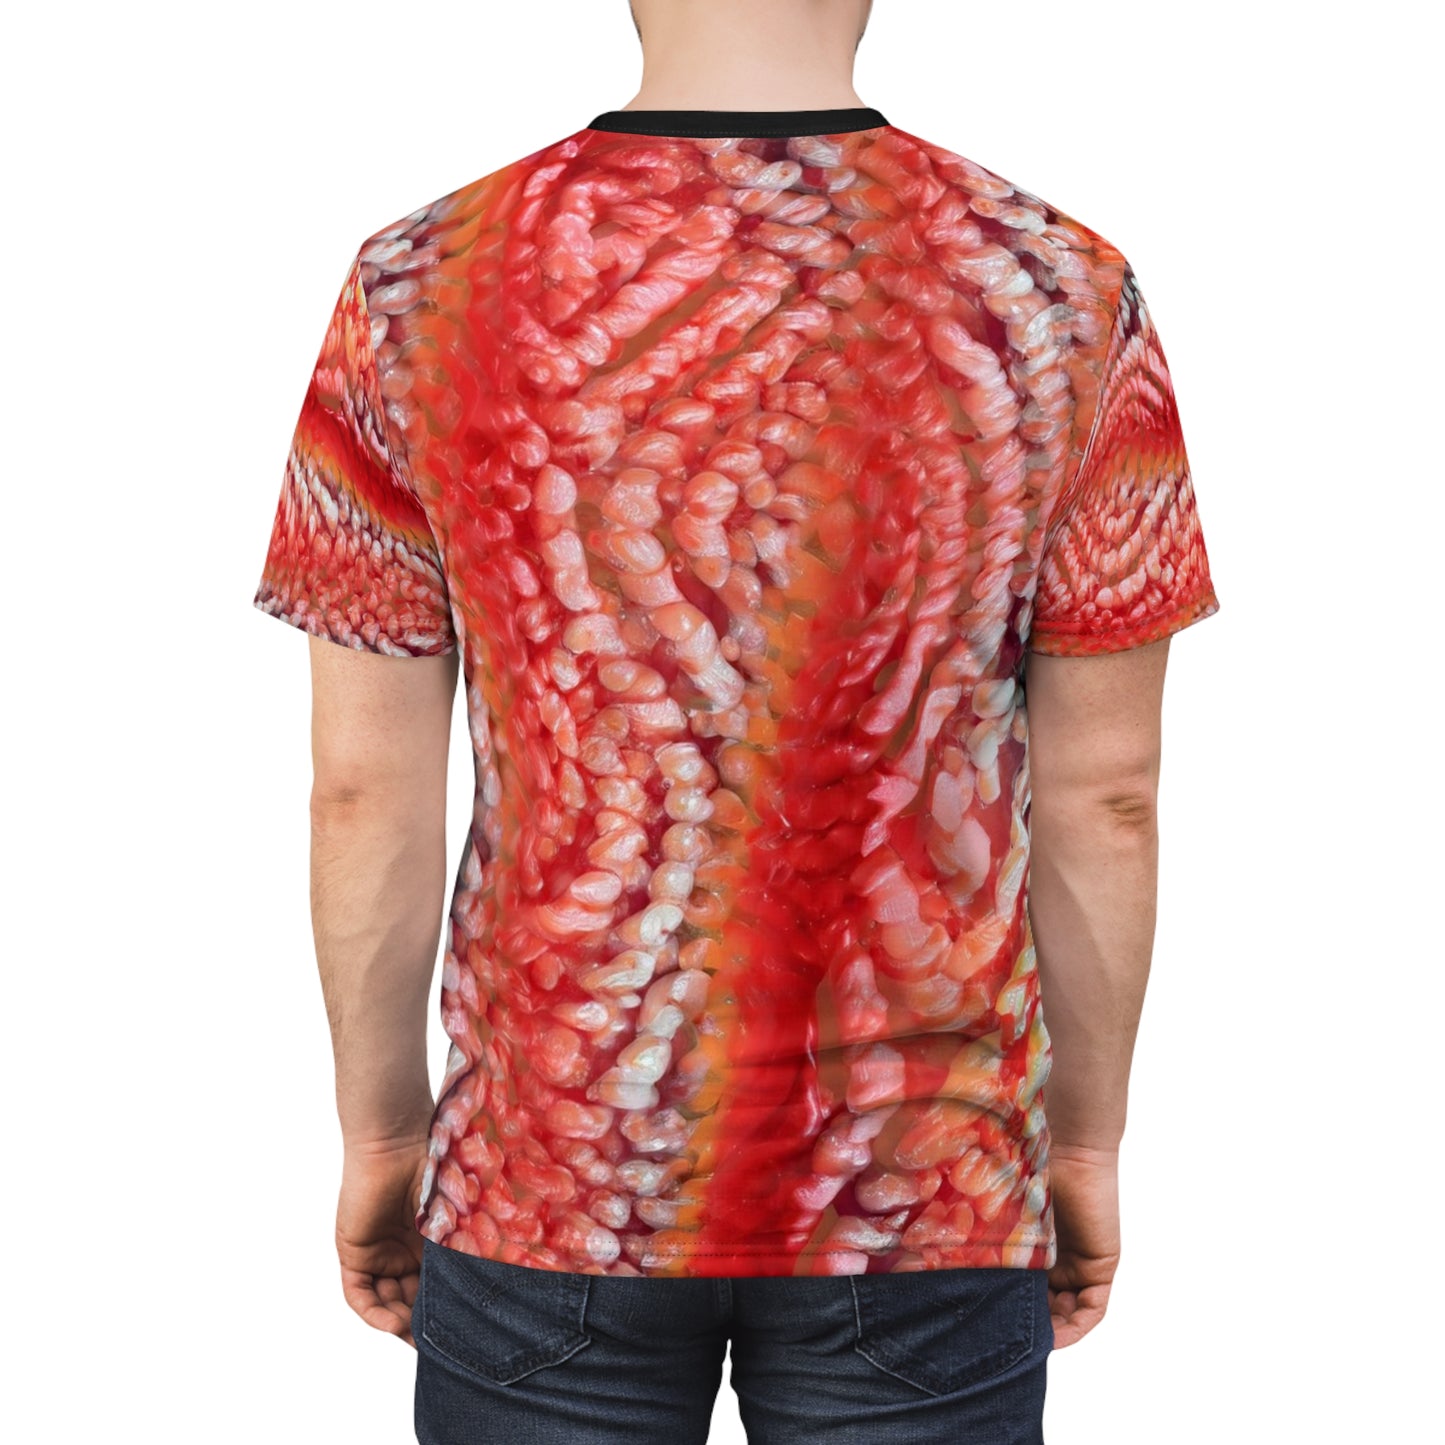 shons orange grunge Cut & Sew Tee T's T-shirt